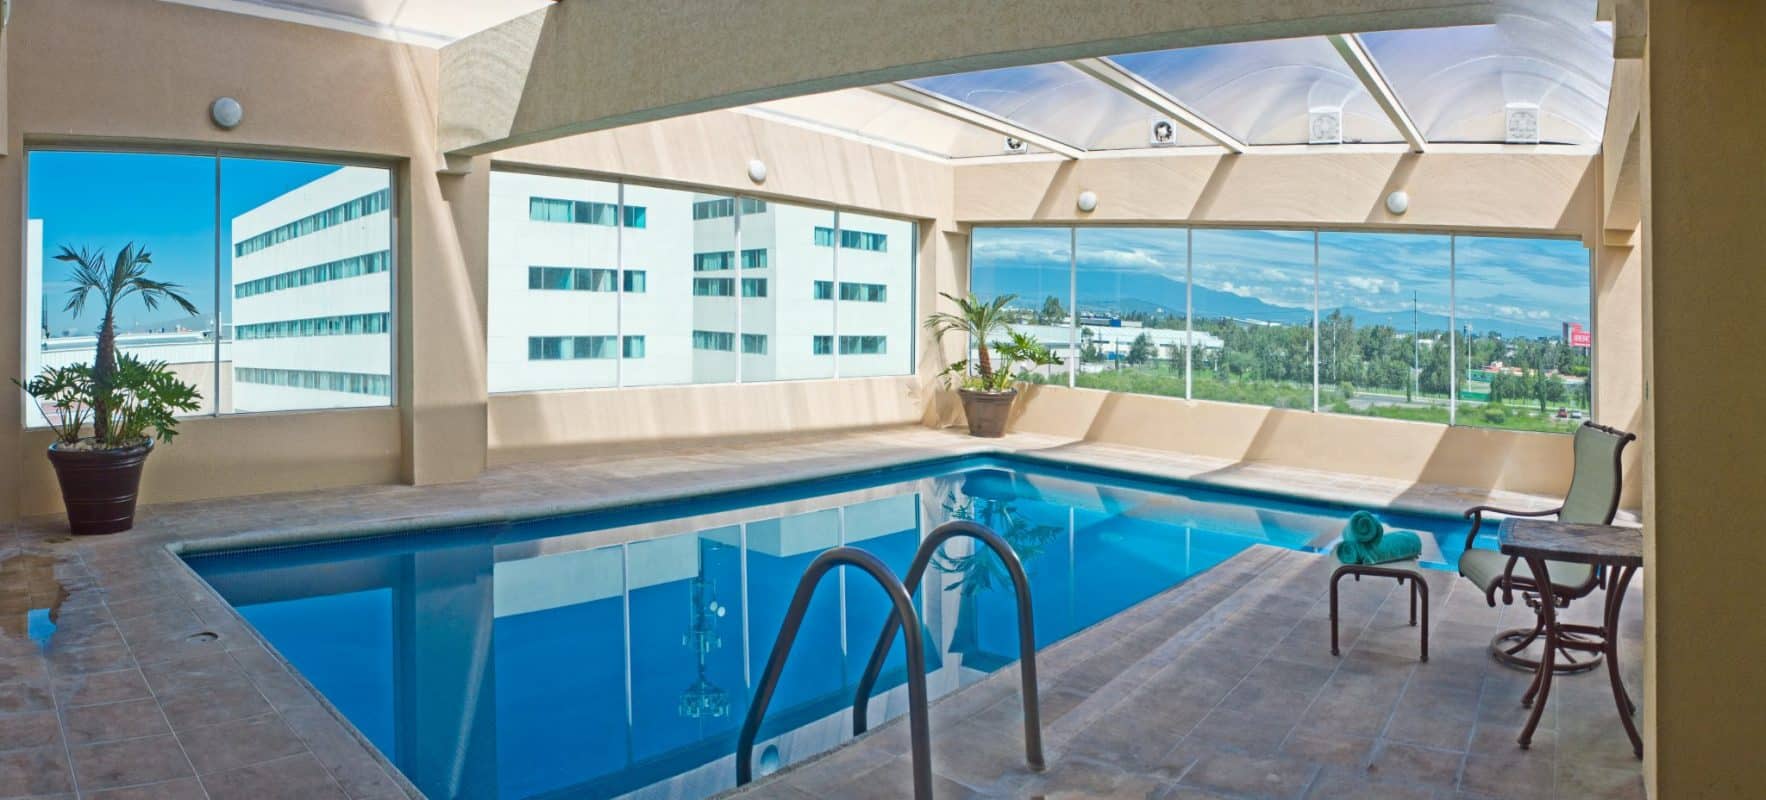 Villa Florida Hotel y Suites - Tu mejor opción en Puebla para hospedarte.